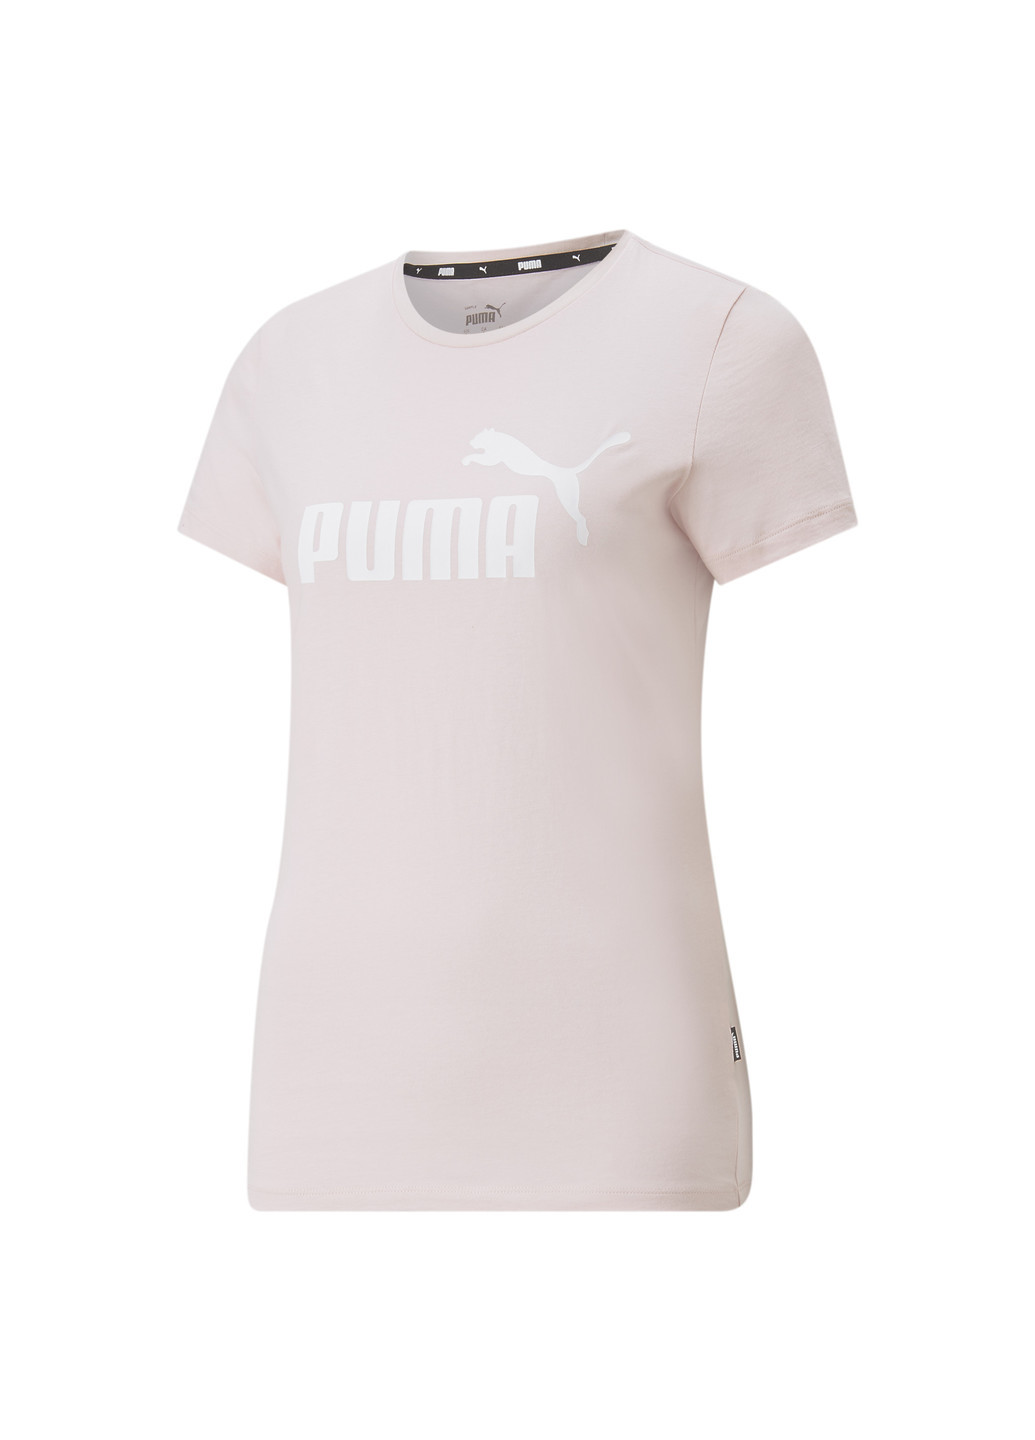 Футболка Essentials Logo Women's Tee Puma однотонная розовая спортивная хлопок